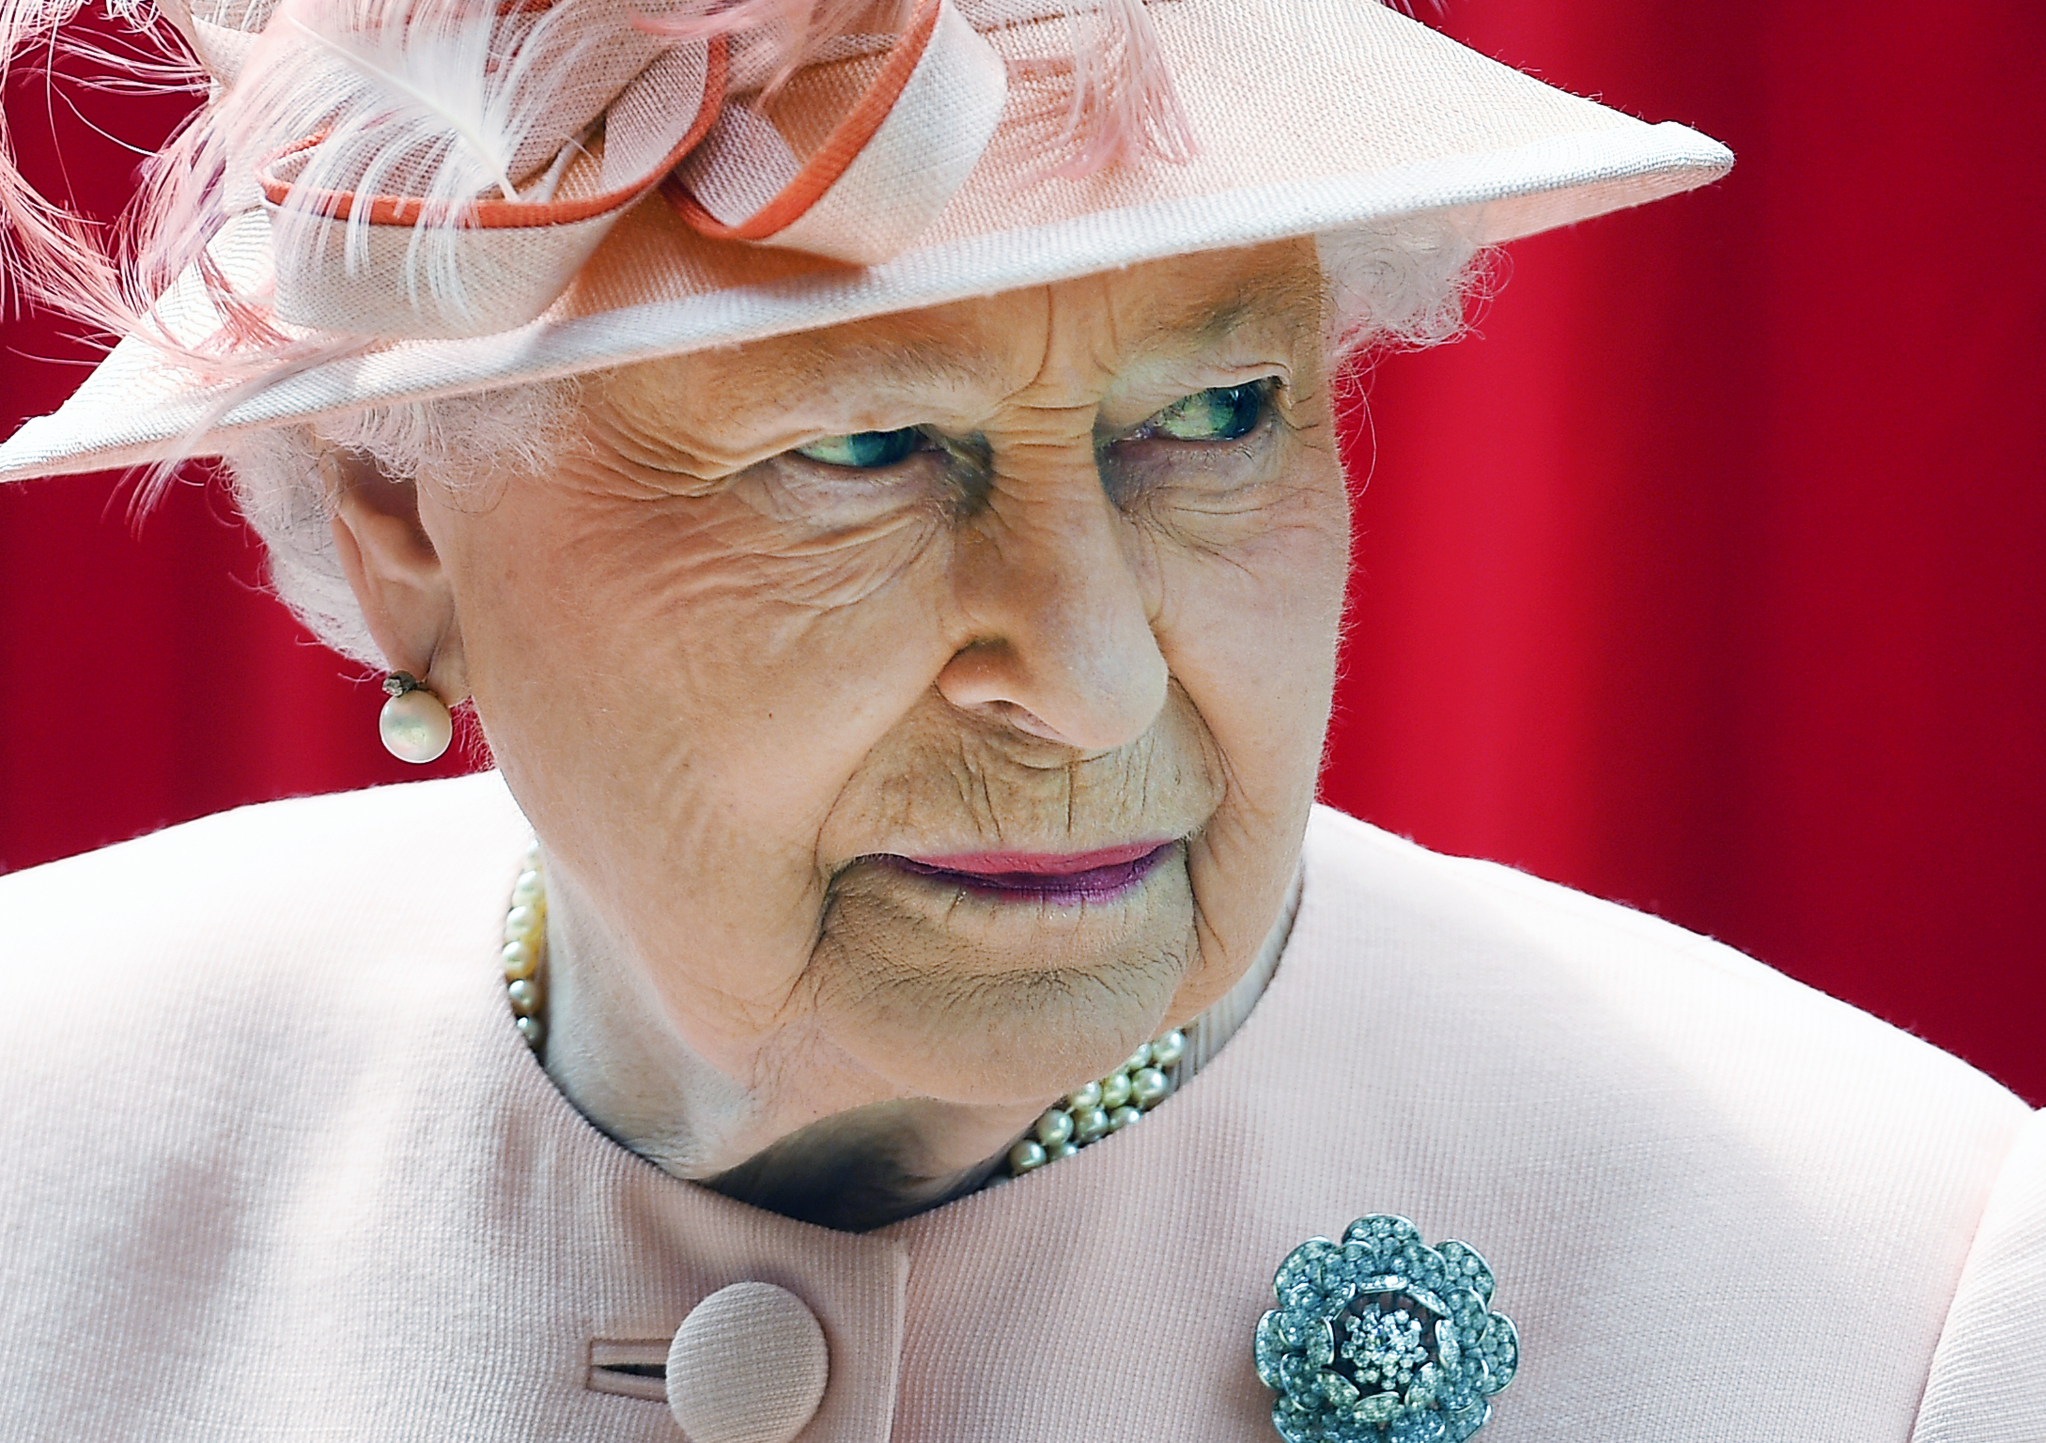 MNOGI PROIZVOĐAČI U VELIKOM PROBLEMU Moraju da menjaju ambalažu nakon smrti kraljice